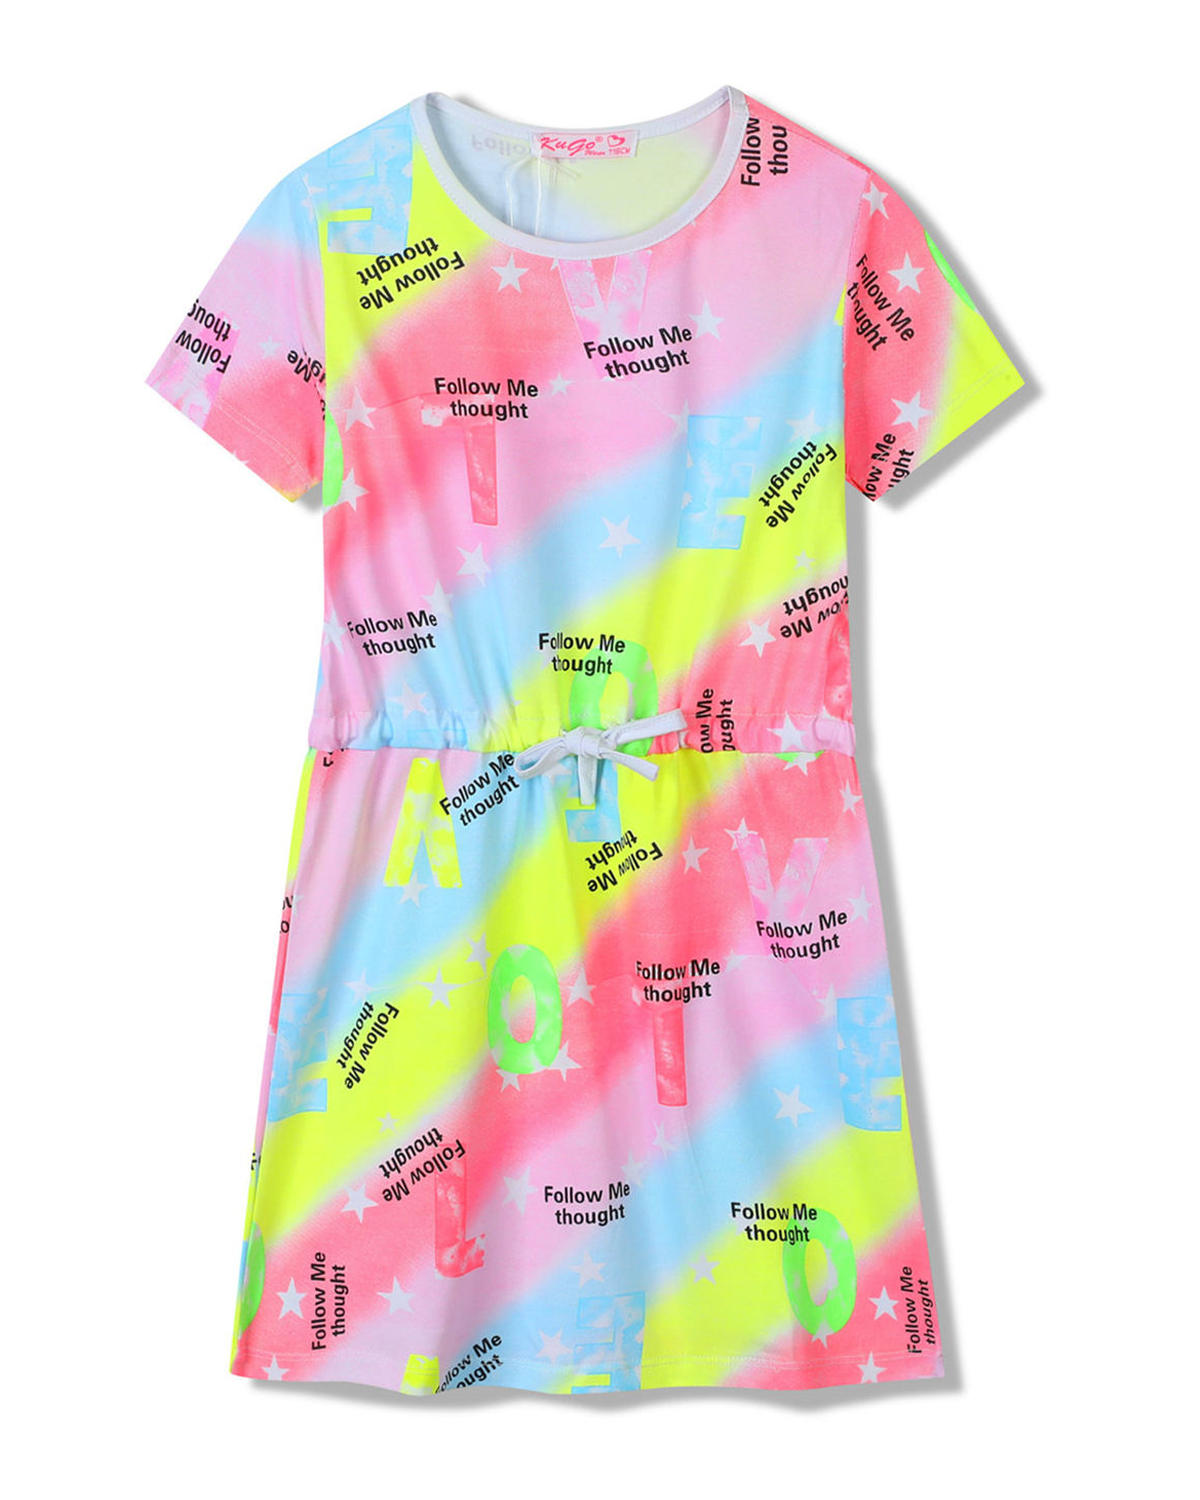 Dívčí šaty - KUGO SH3518, mix barev / fialkový lem Barva: Mix barev, Velikost: 128